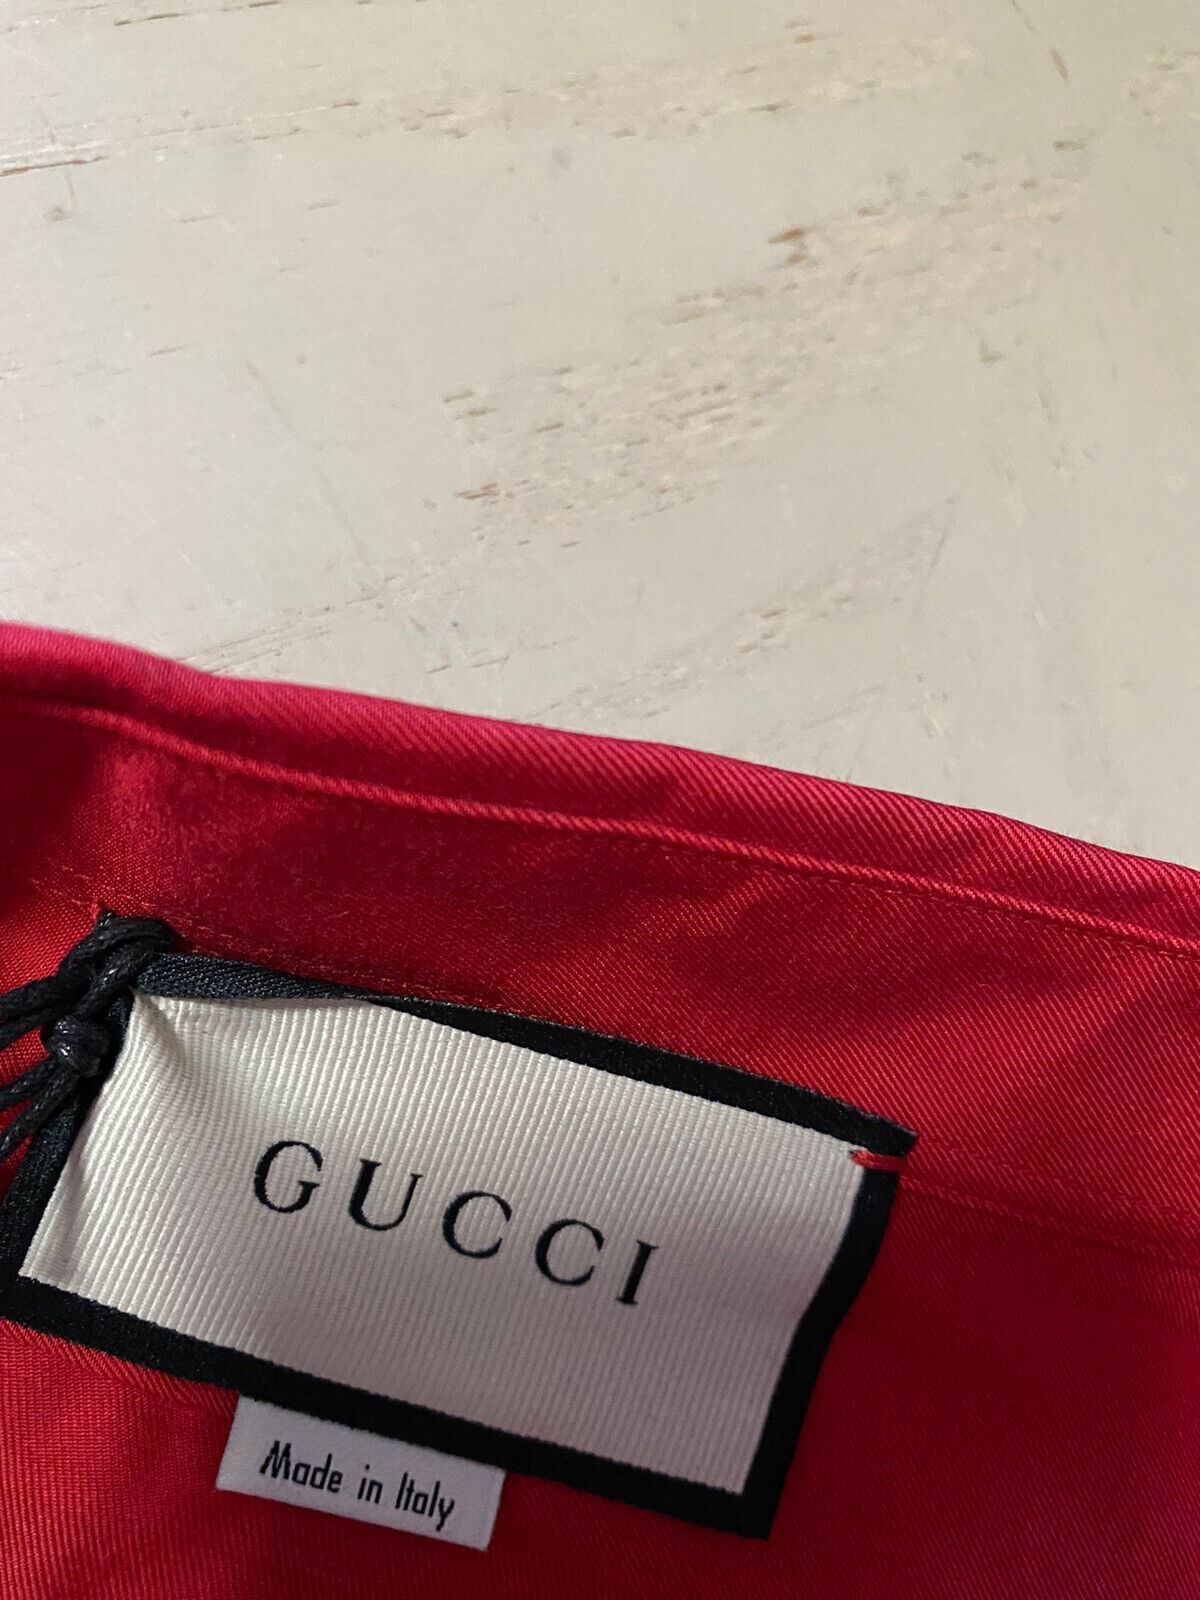 Новая мужская классическая рубашка Gucci с длинным рукавом стоимостью 1200 долларов DK, бордовый размер XXL/54, Италия, ЕС